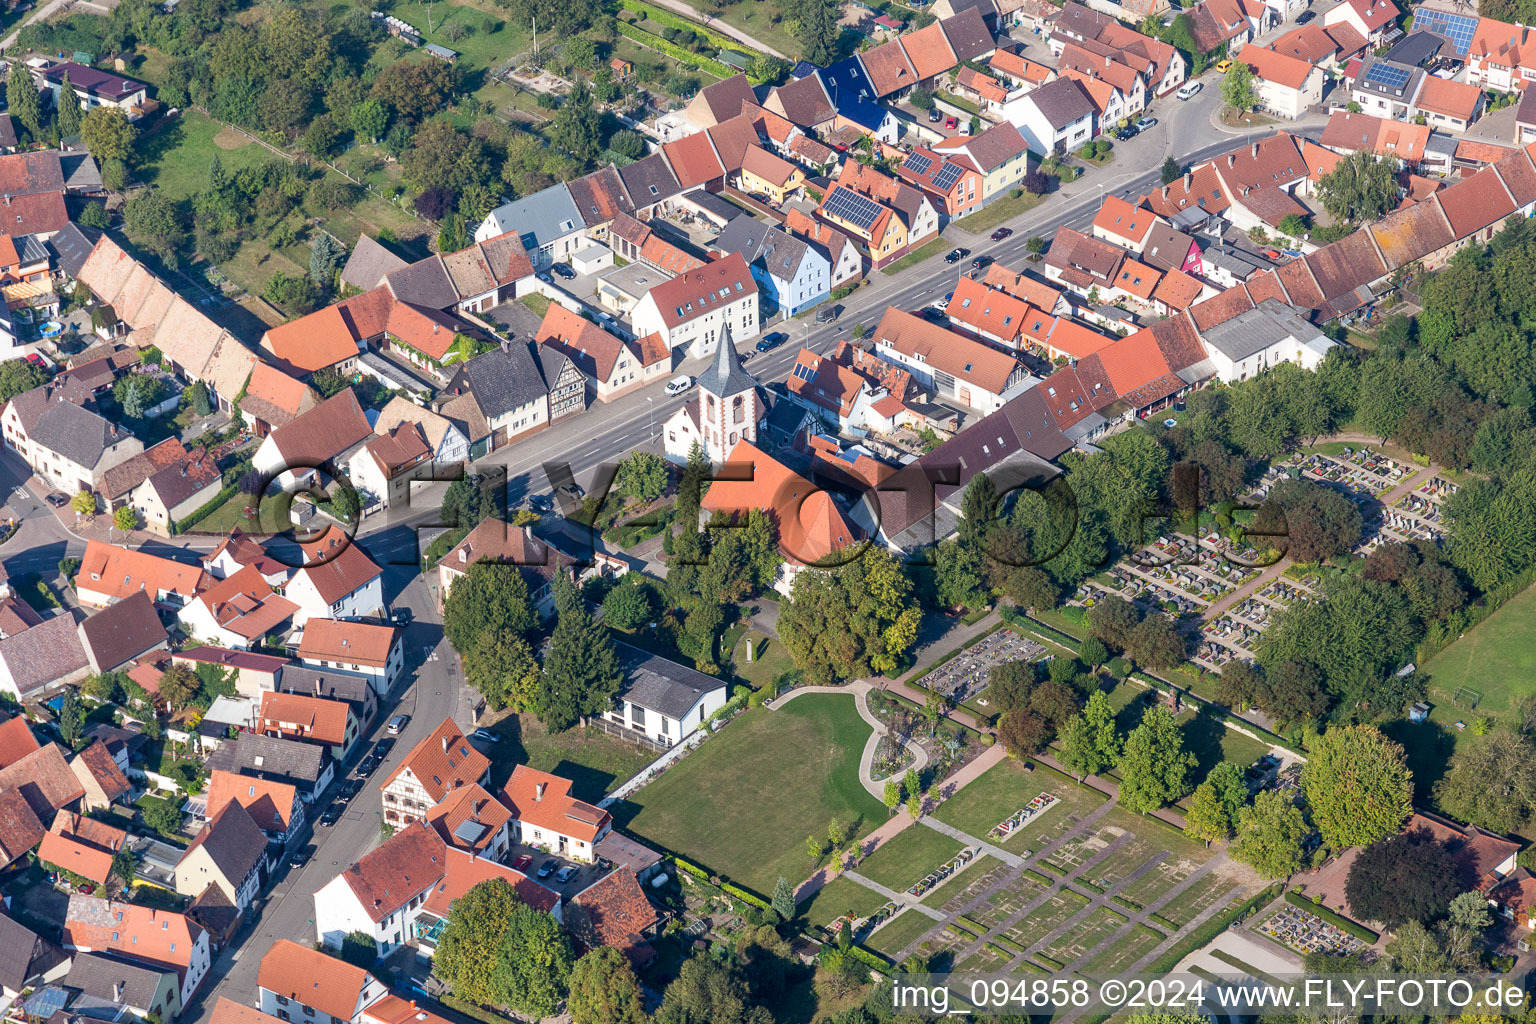 Vue aérienne de Bâtiment religieux dans le quartier Liedolsheim de Dettenheim à Liedolsheim dans le département Bade-Wurtemberg, Allemagne